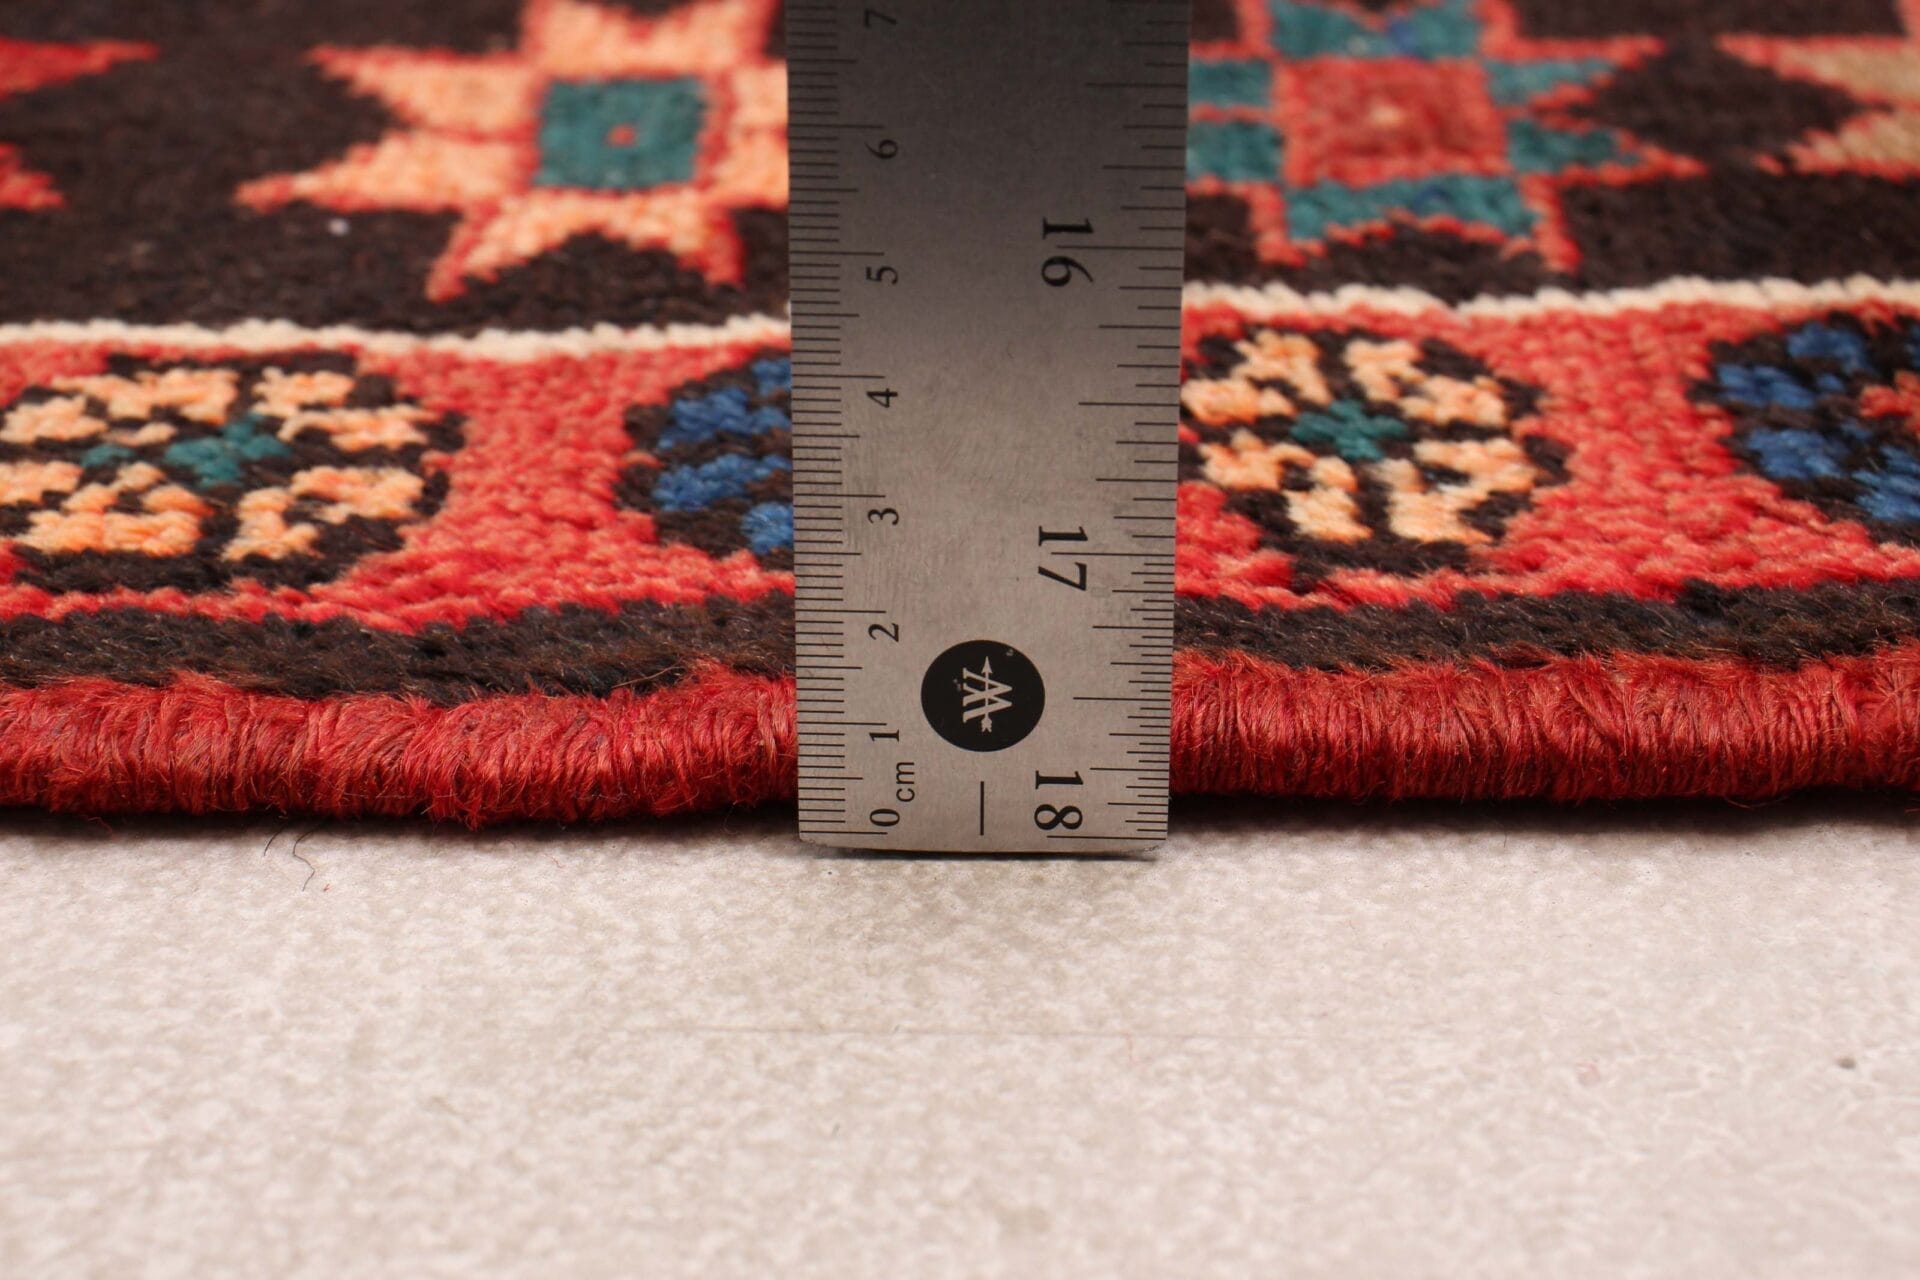 Om de maat van een tapijt te meten, wordt een liniaal gebruikt.